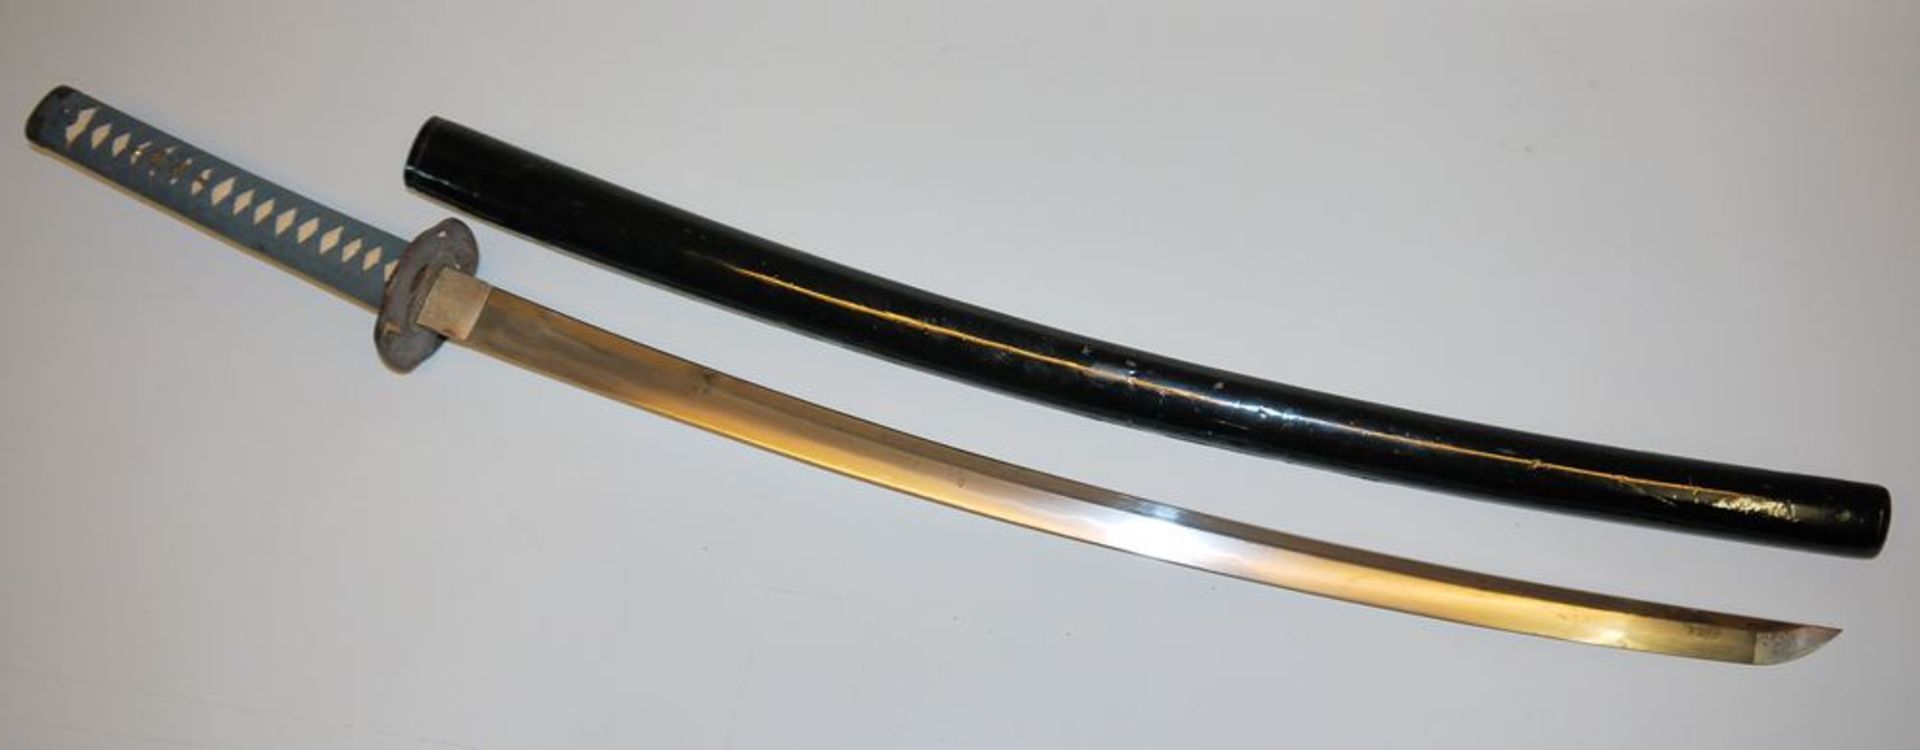 Katana, japanisches Schwert der Edo/Meiji-Zeit - Bild 4 aus 8